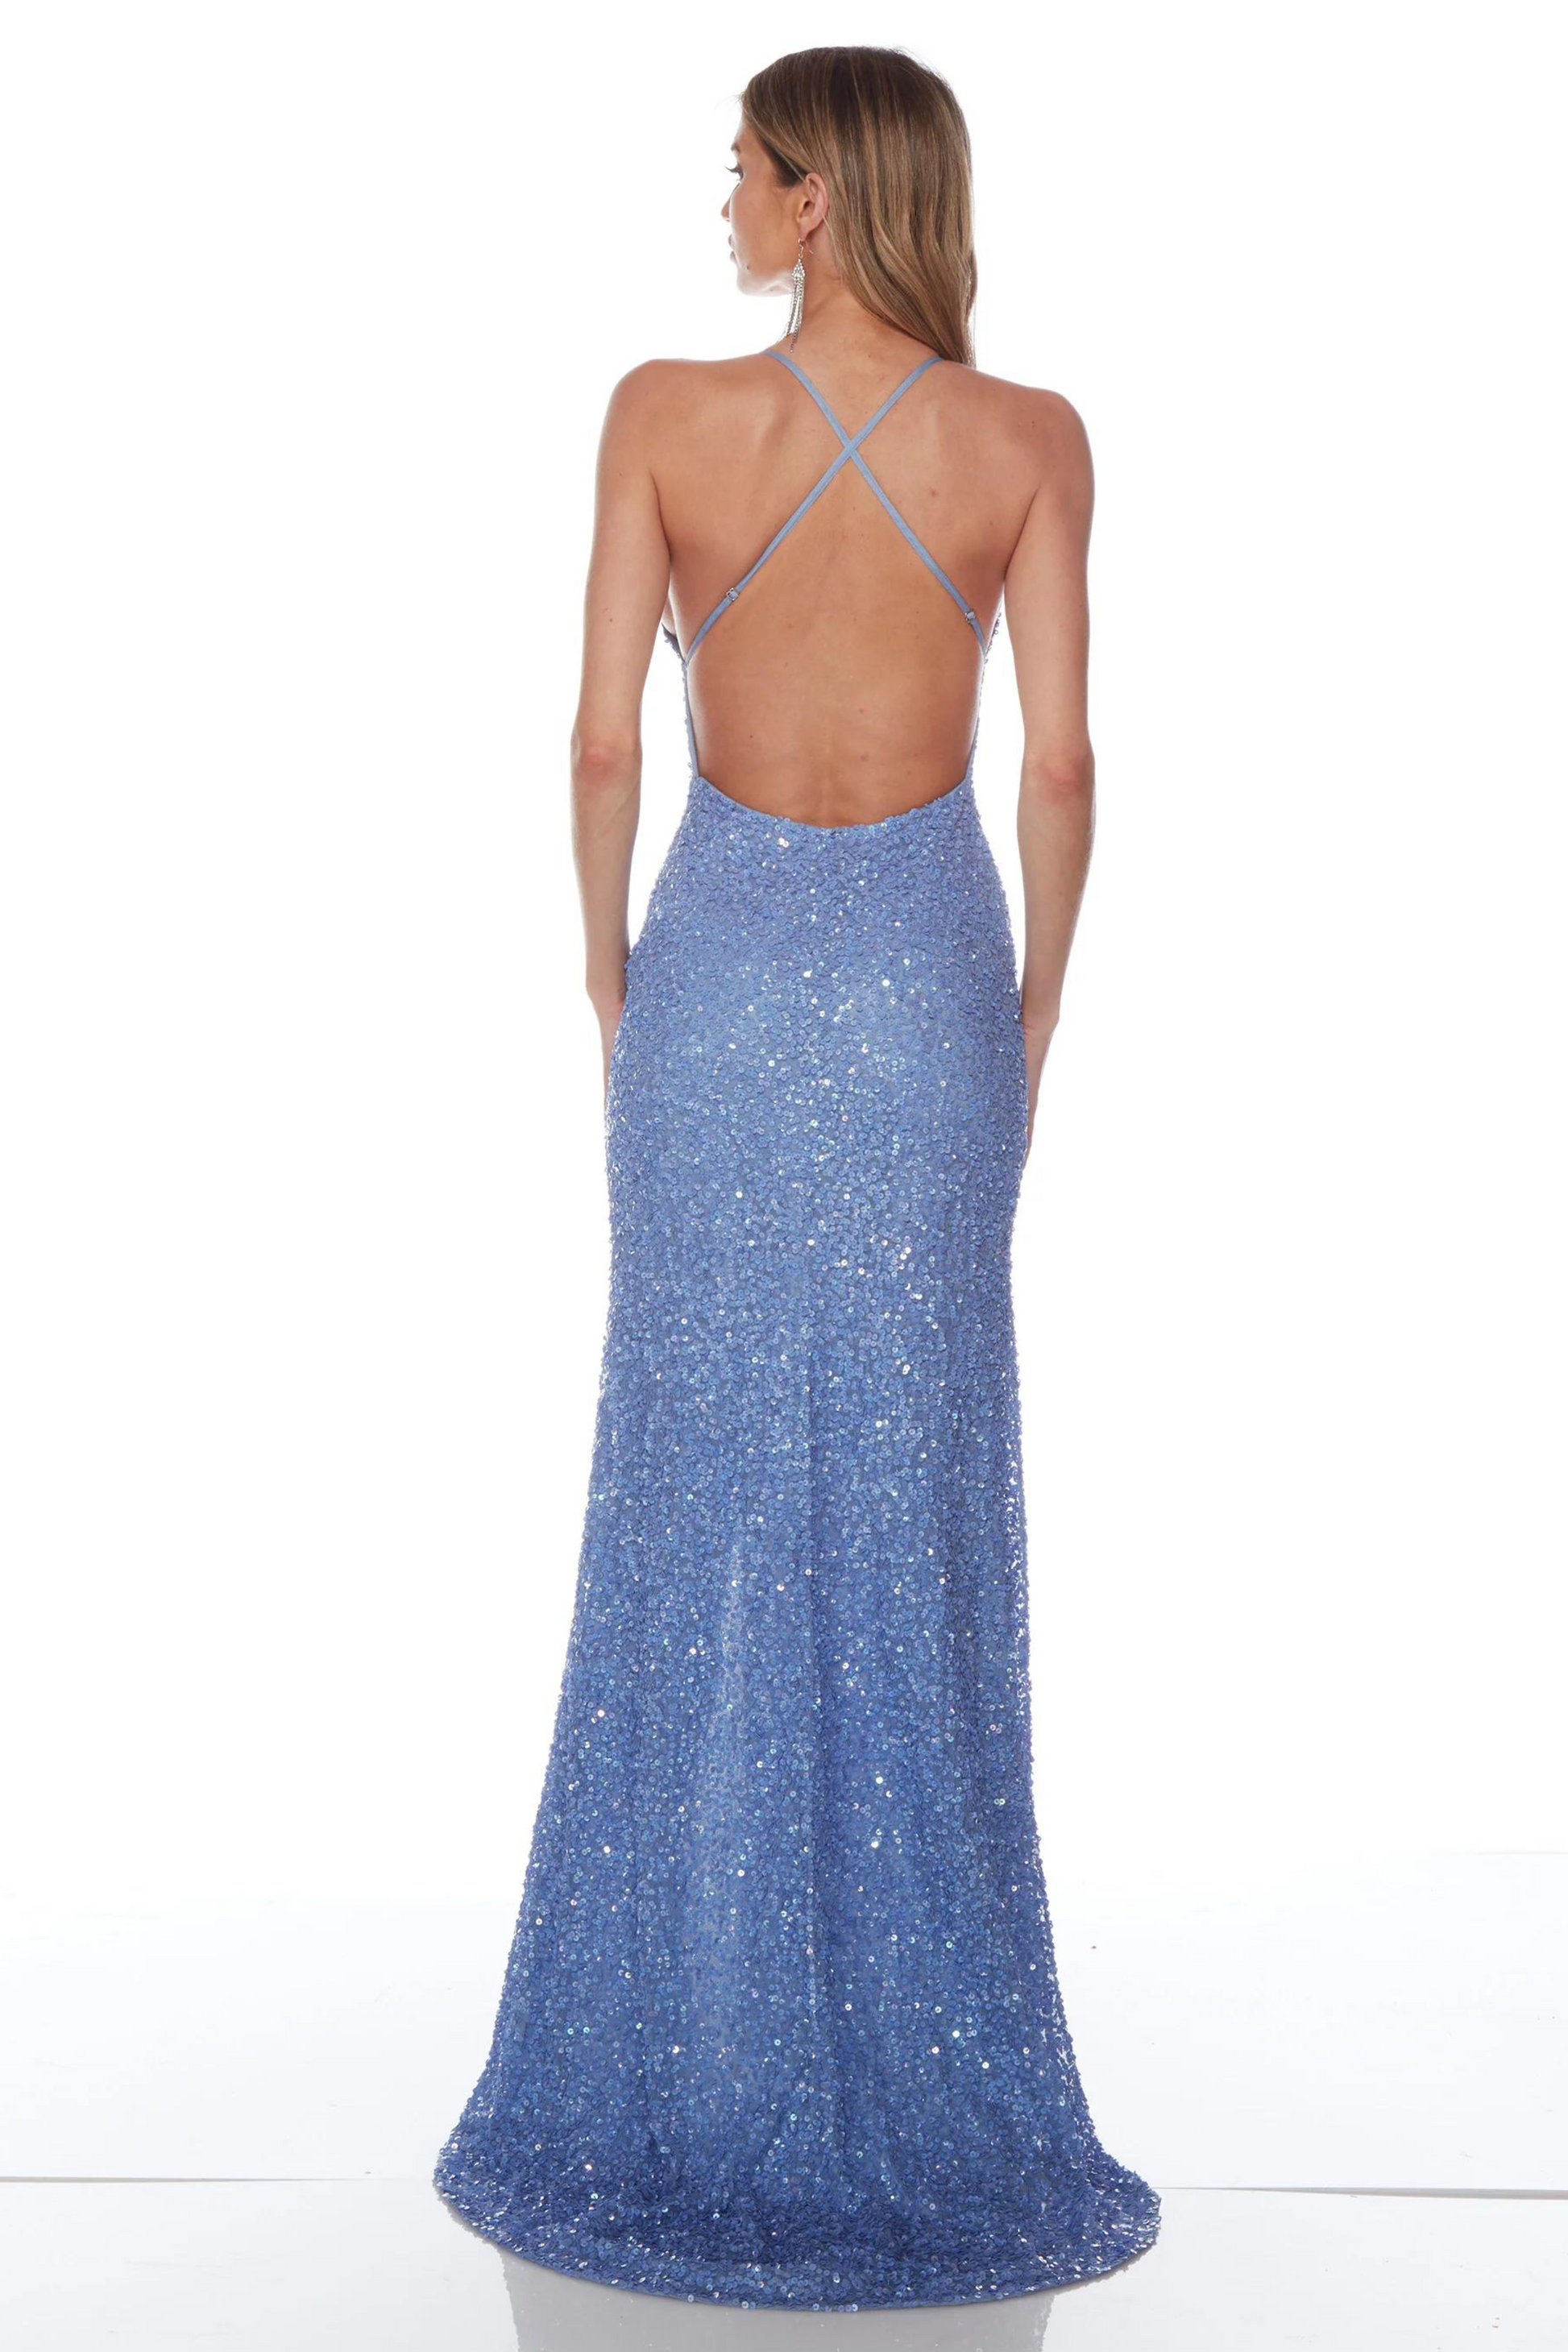 ASlyce Paris 88002 formal dress in periwinkle blue sequins